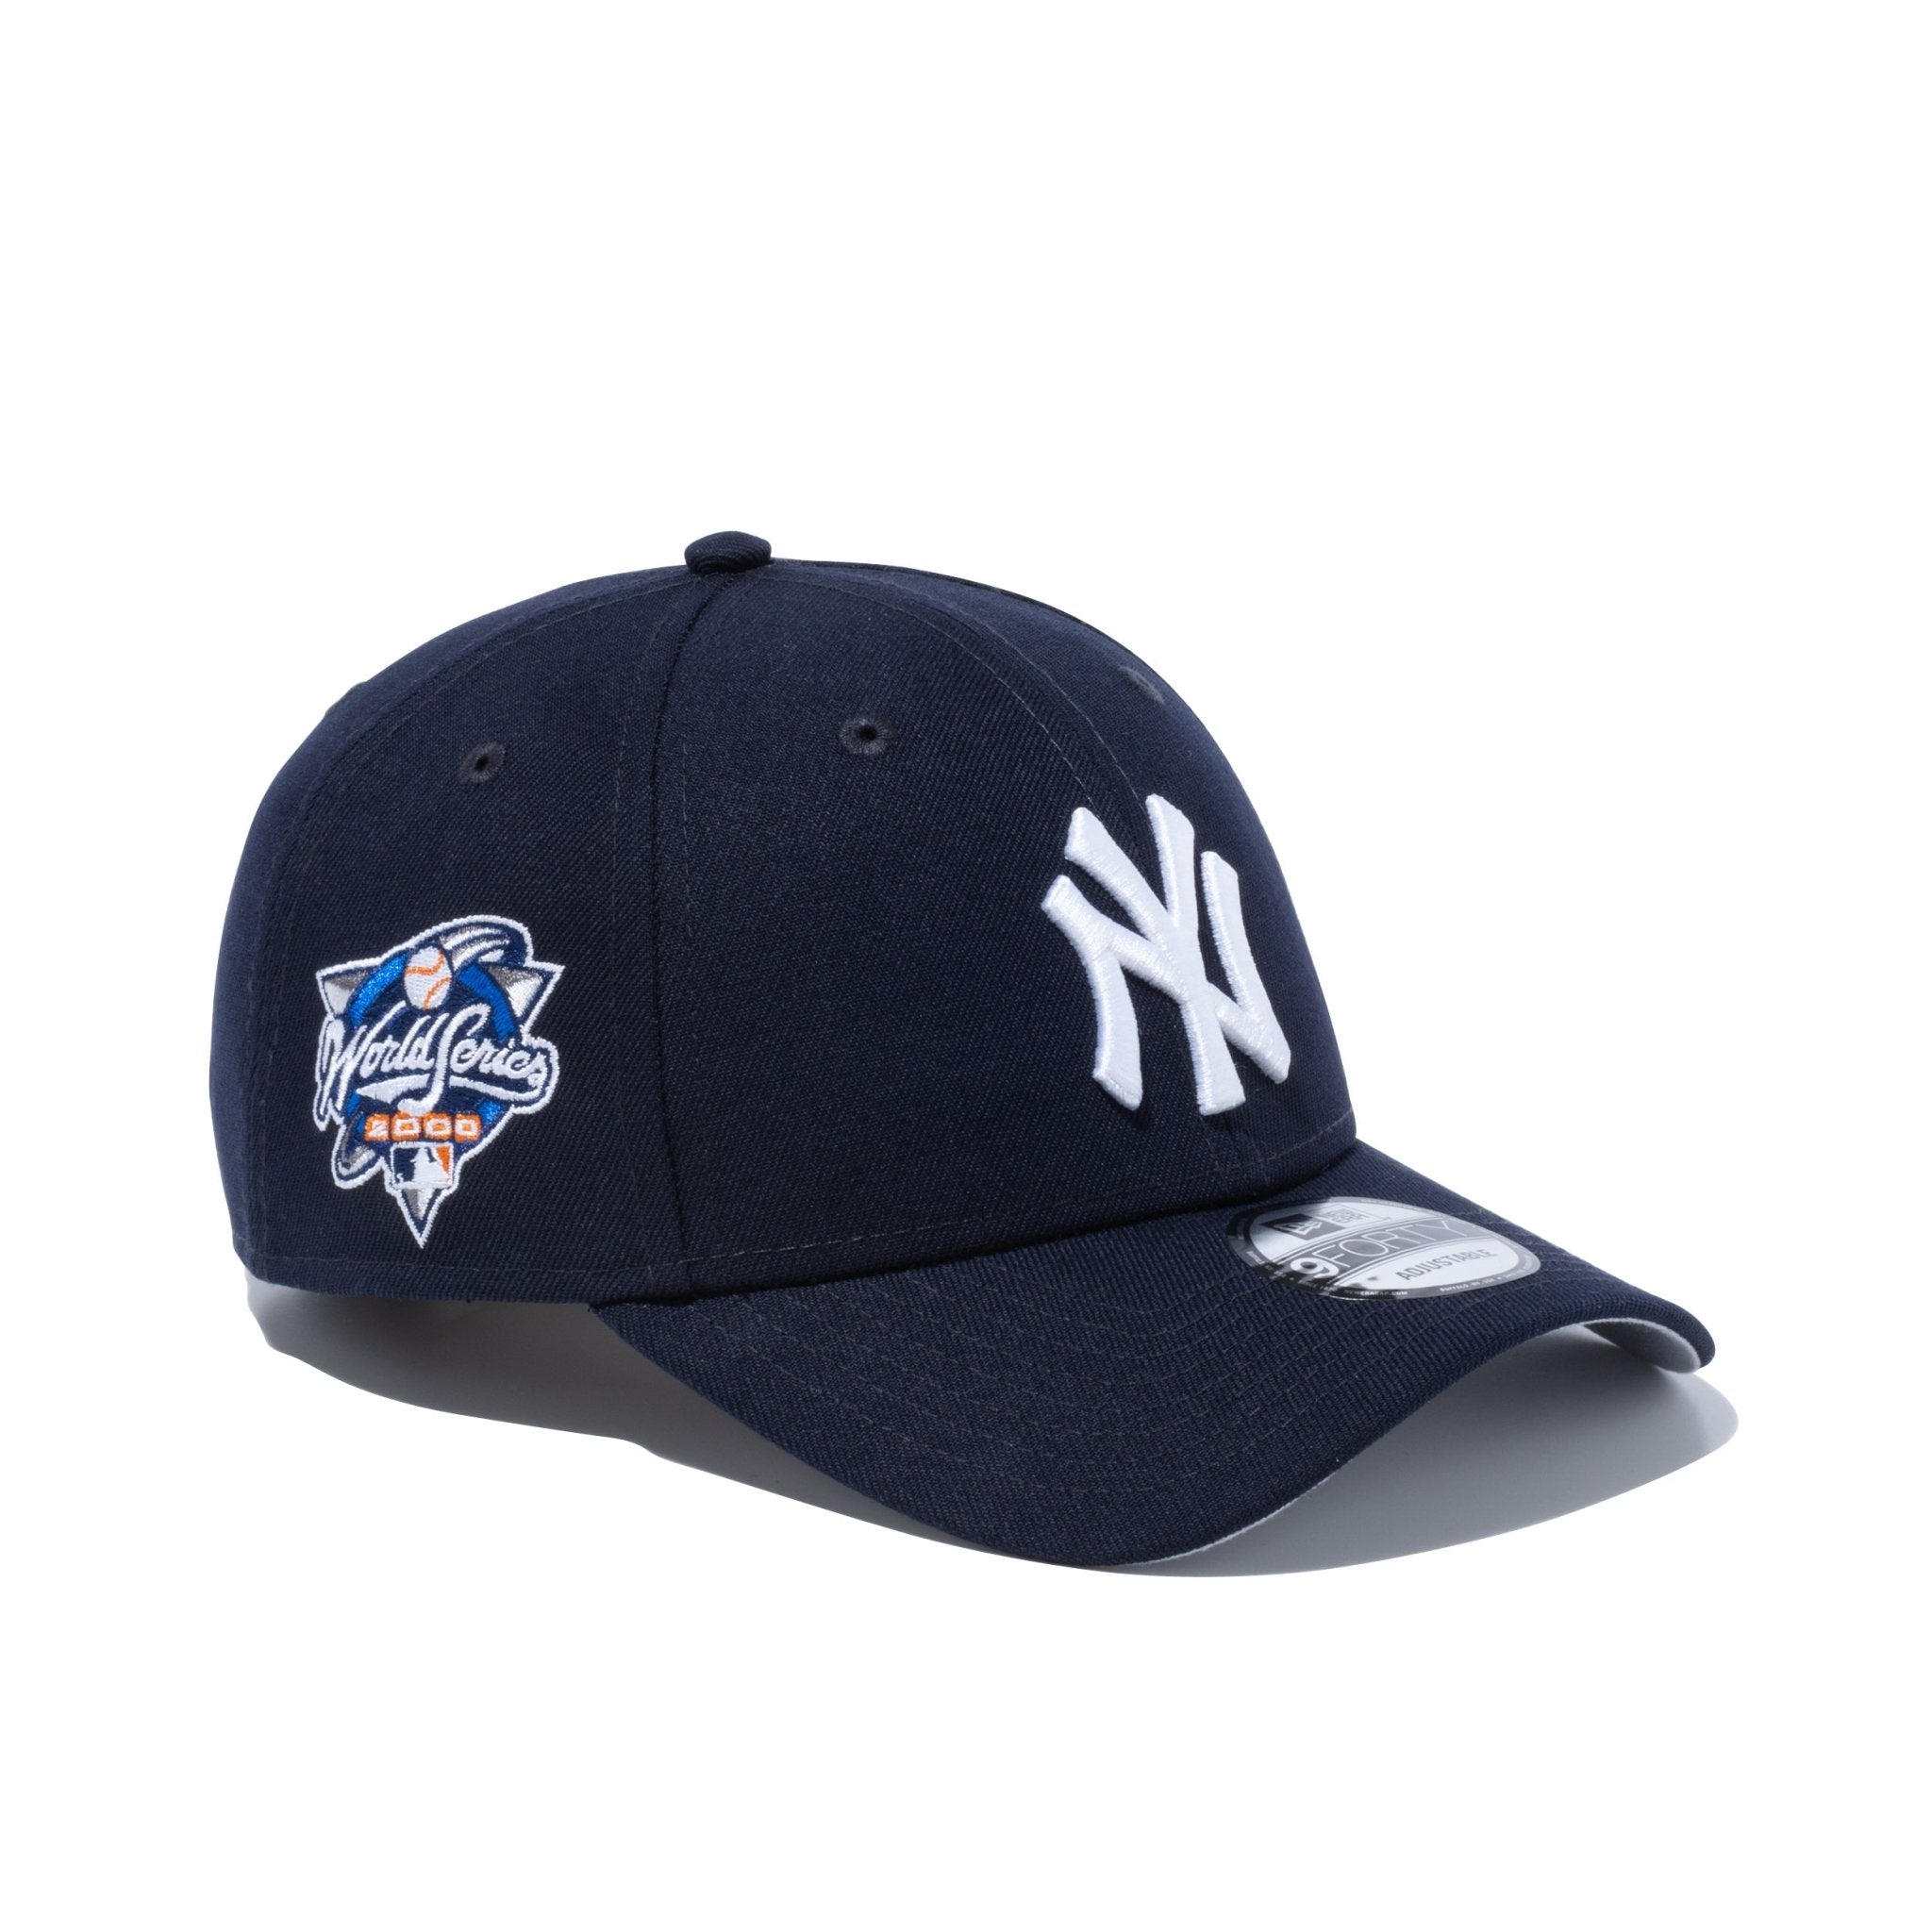 9FORTY MLBワールドシリーズ ニューヨーク・ヤンキース サイドパッチ ネイビー ニューエラオンラインストア